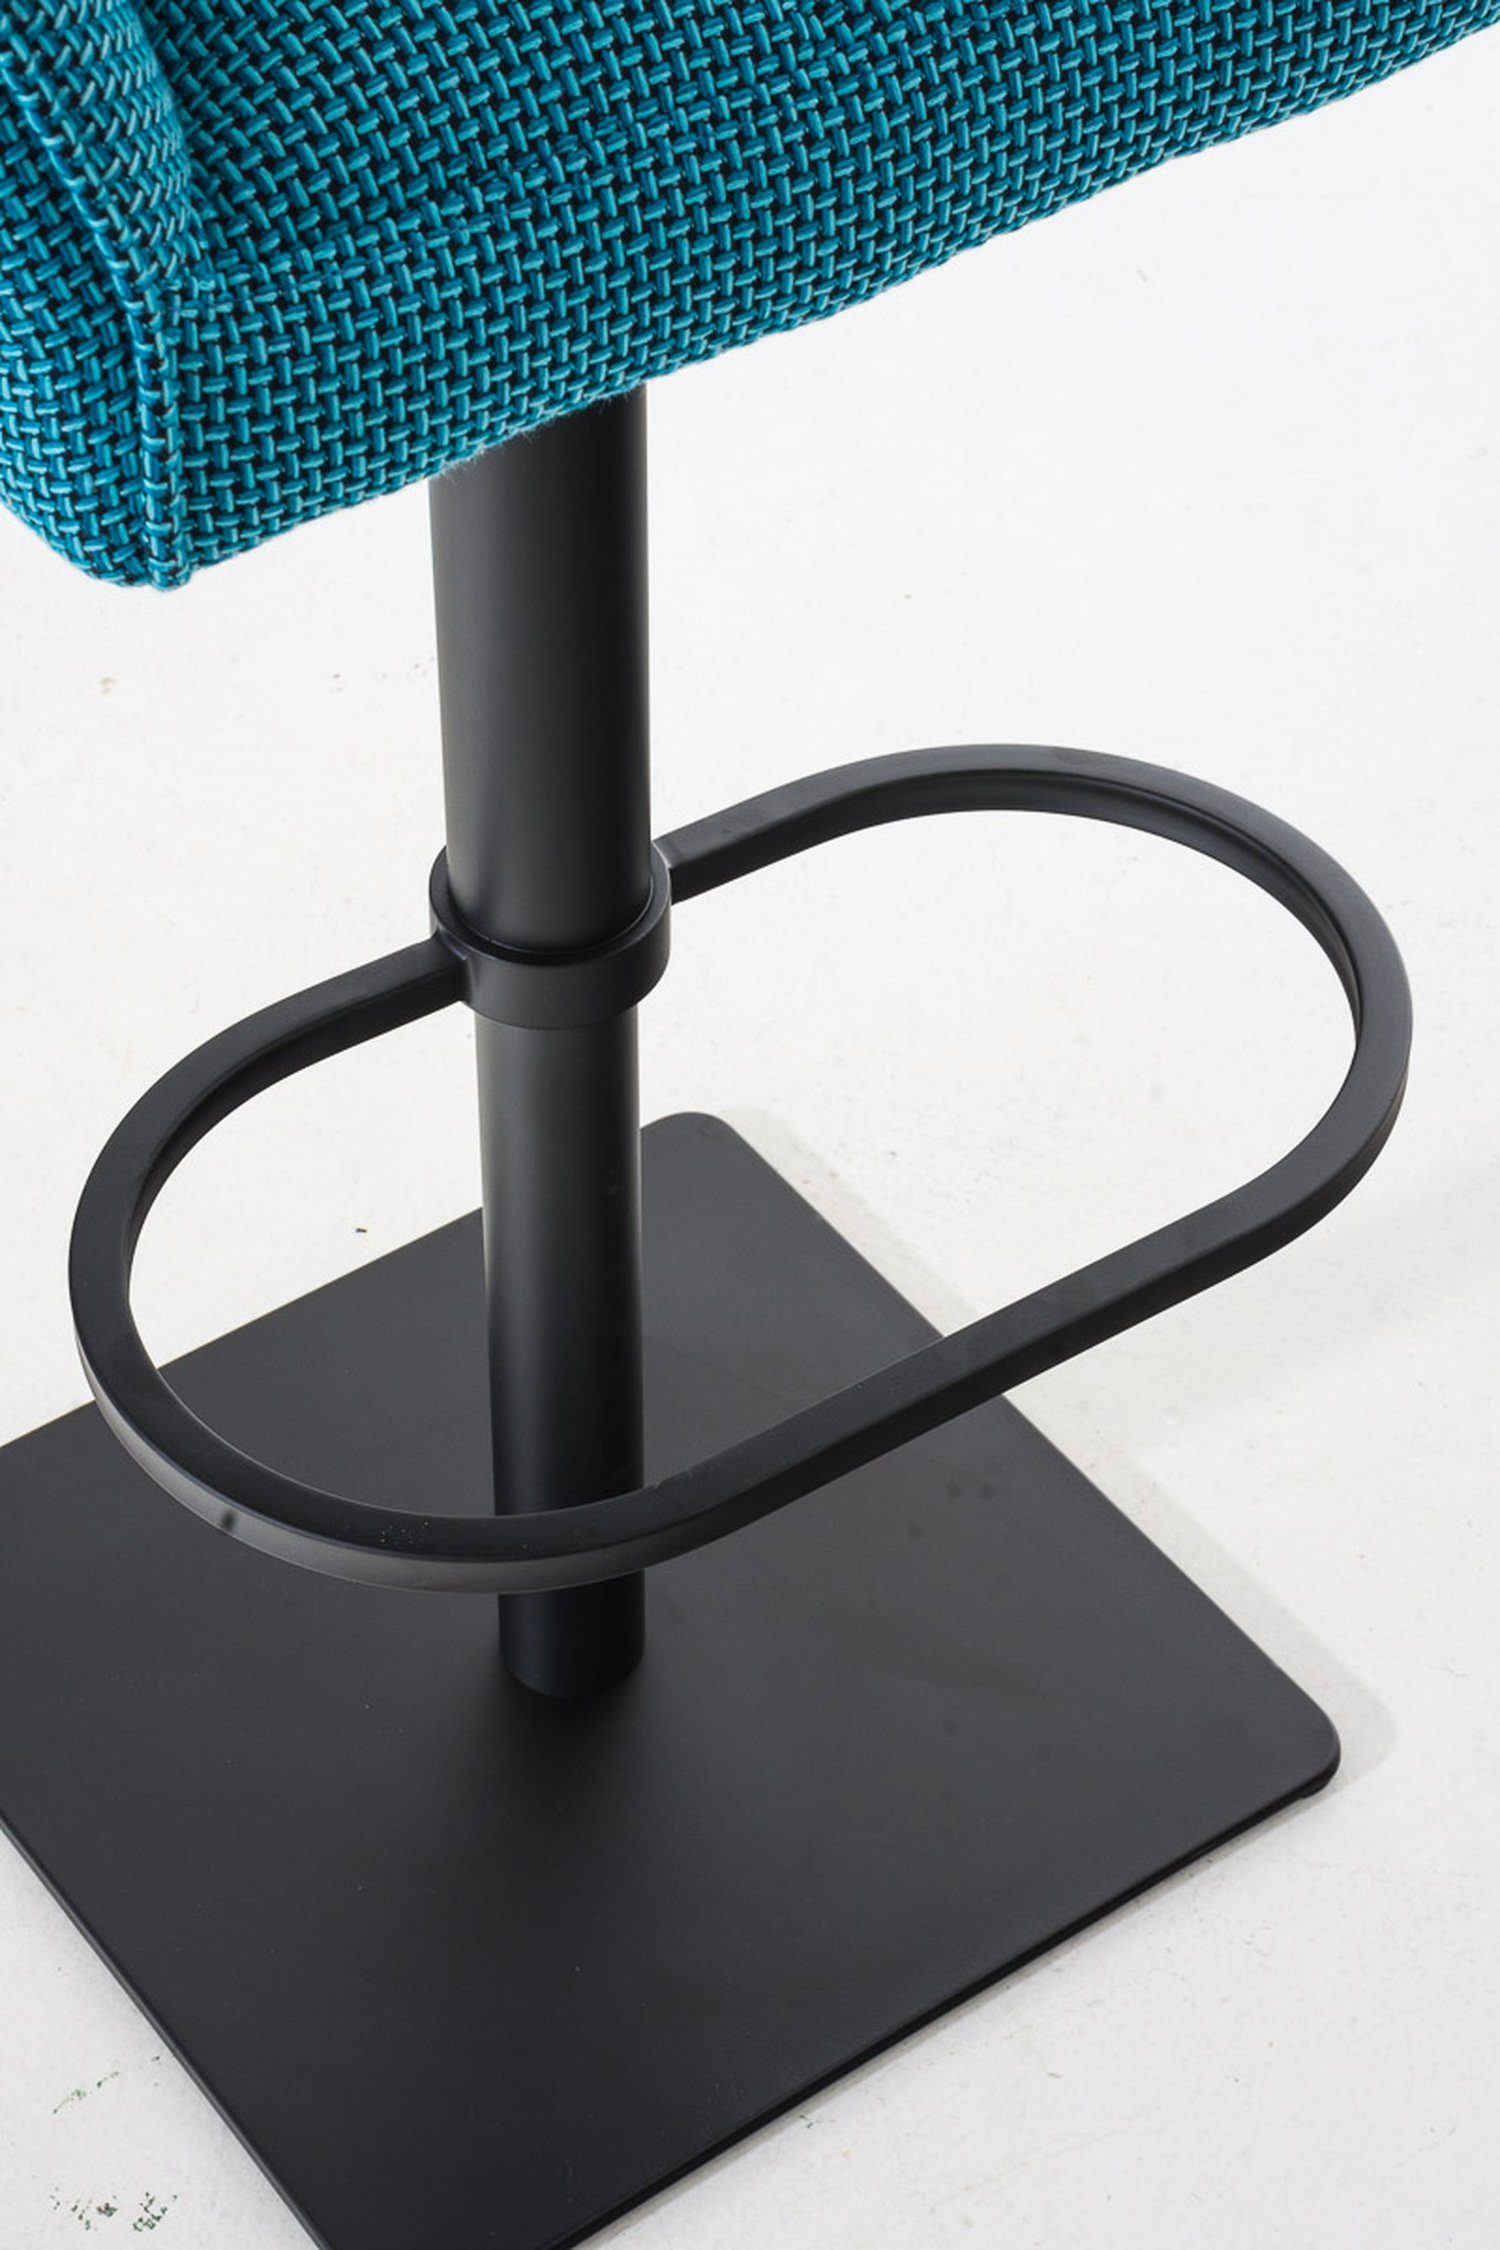 Barhocker - Metall Türkis Fußstütze 360° - & (mit für Damaso Sitzfläche: Küche), und matt Stoff Rückenlehne - TPFLiving schwarz Theke Hocker drehbar